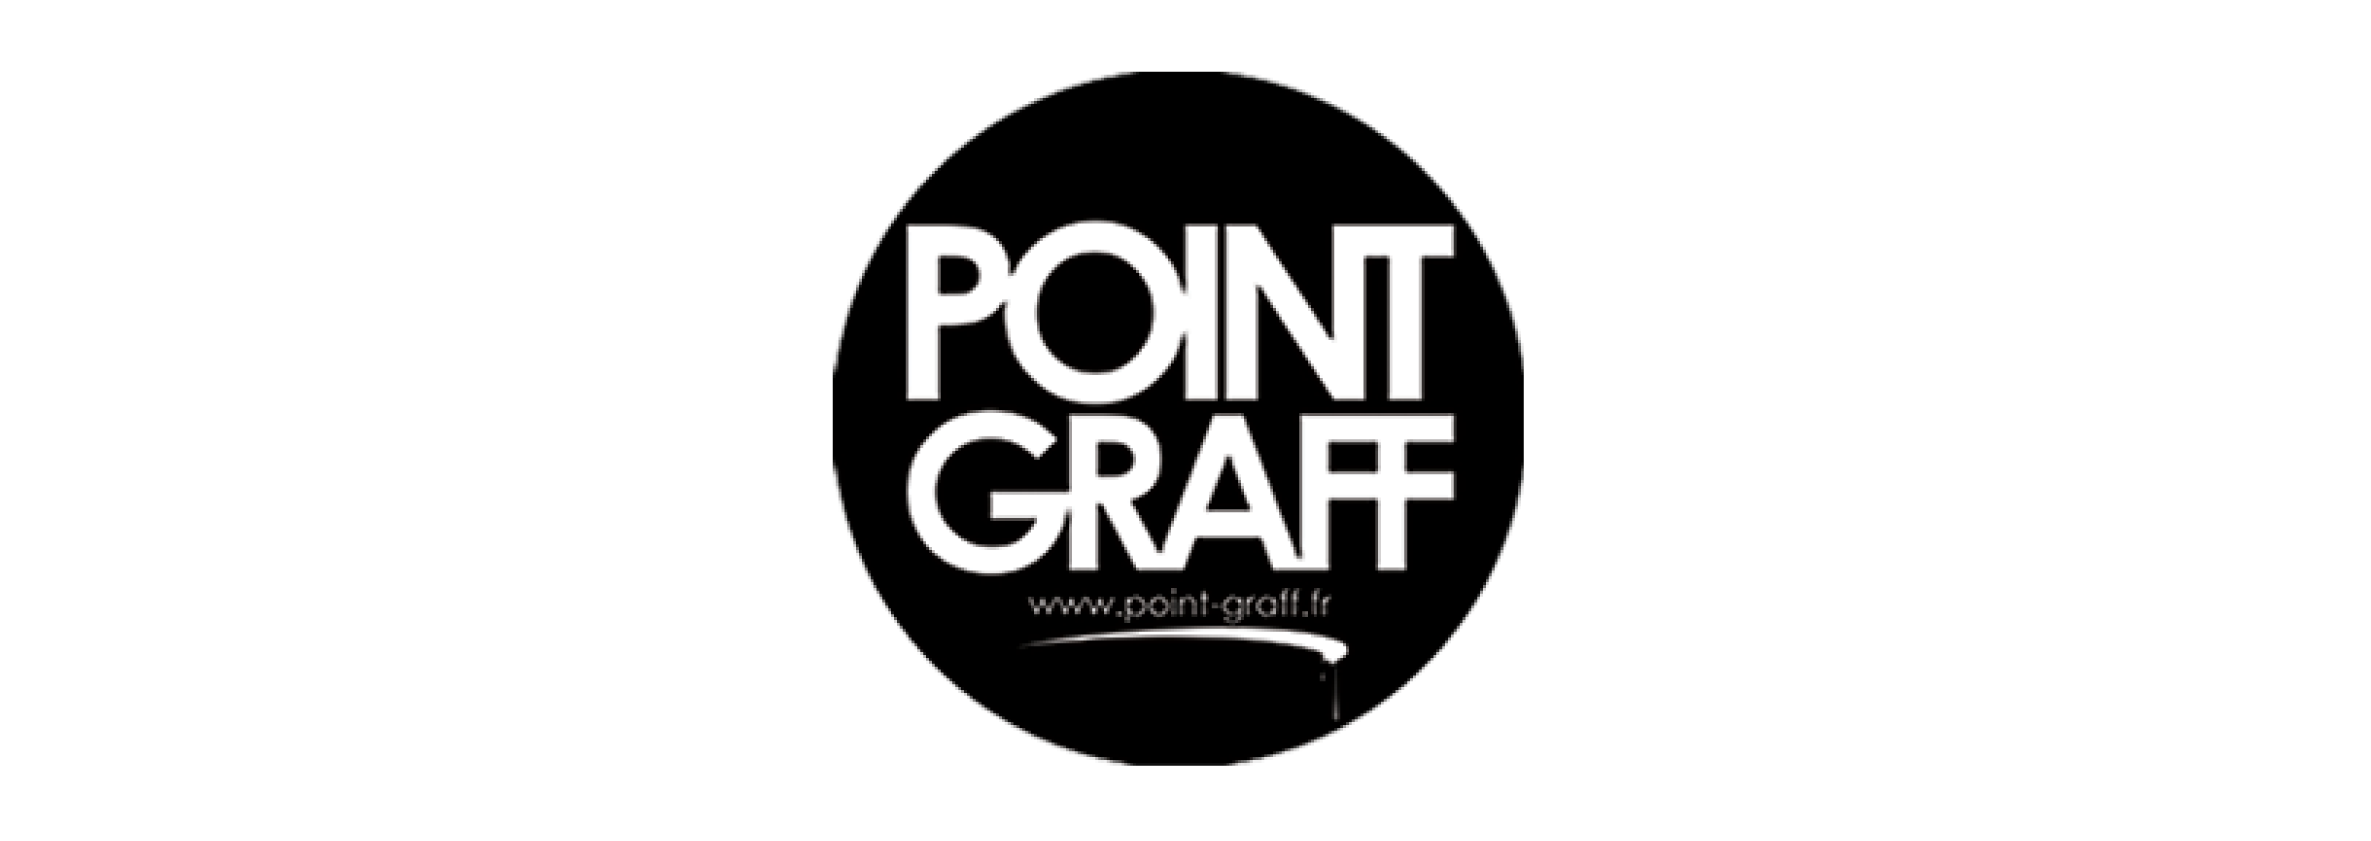 Point Graff